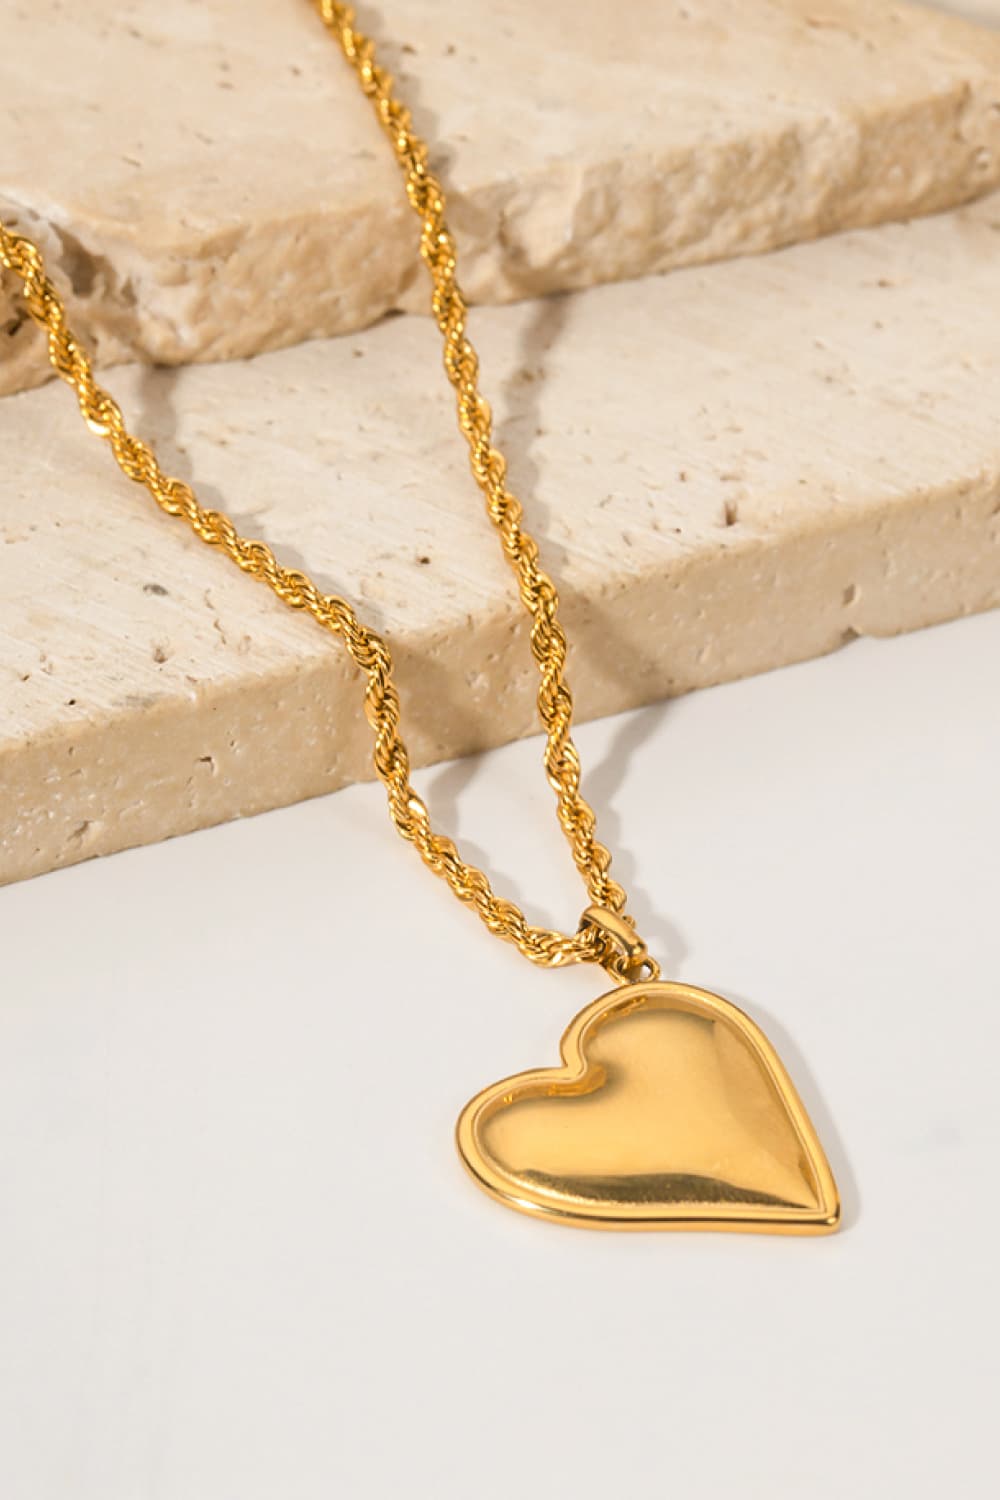 Gold Heart Pendant NecklaceNecklaceBeach Rose Co.